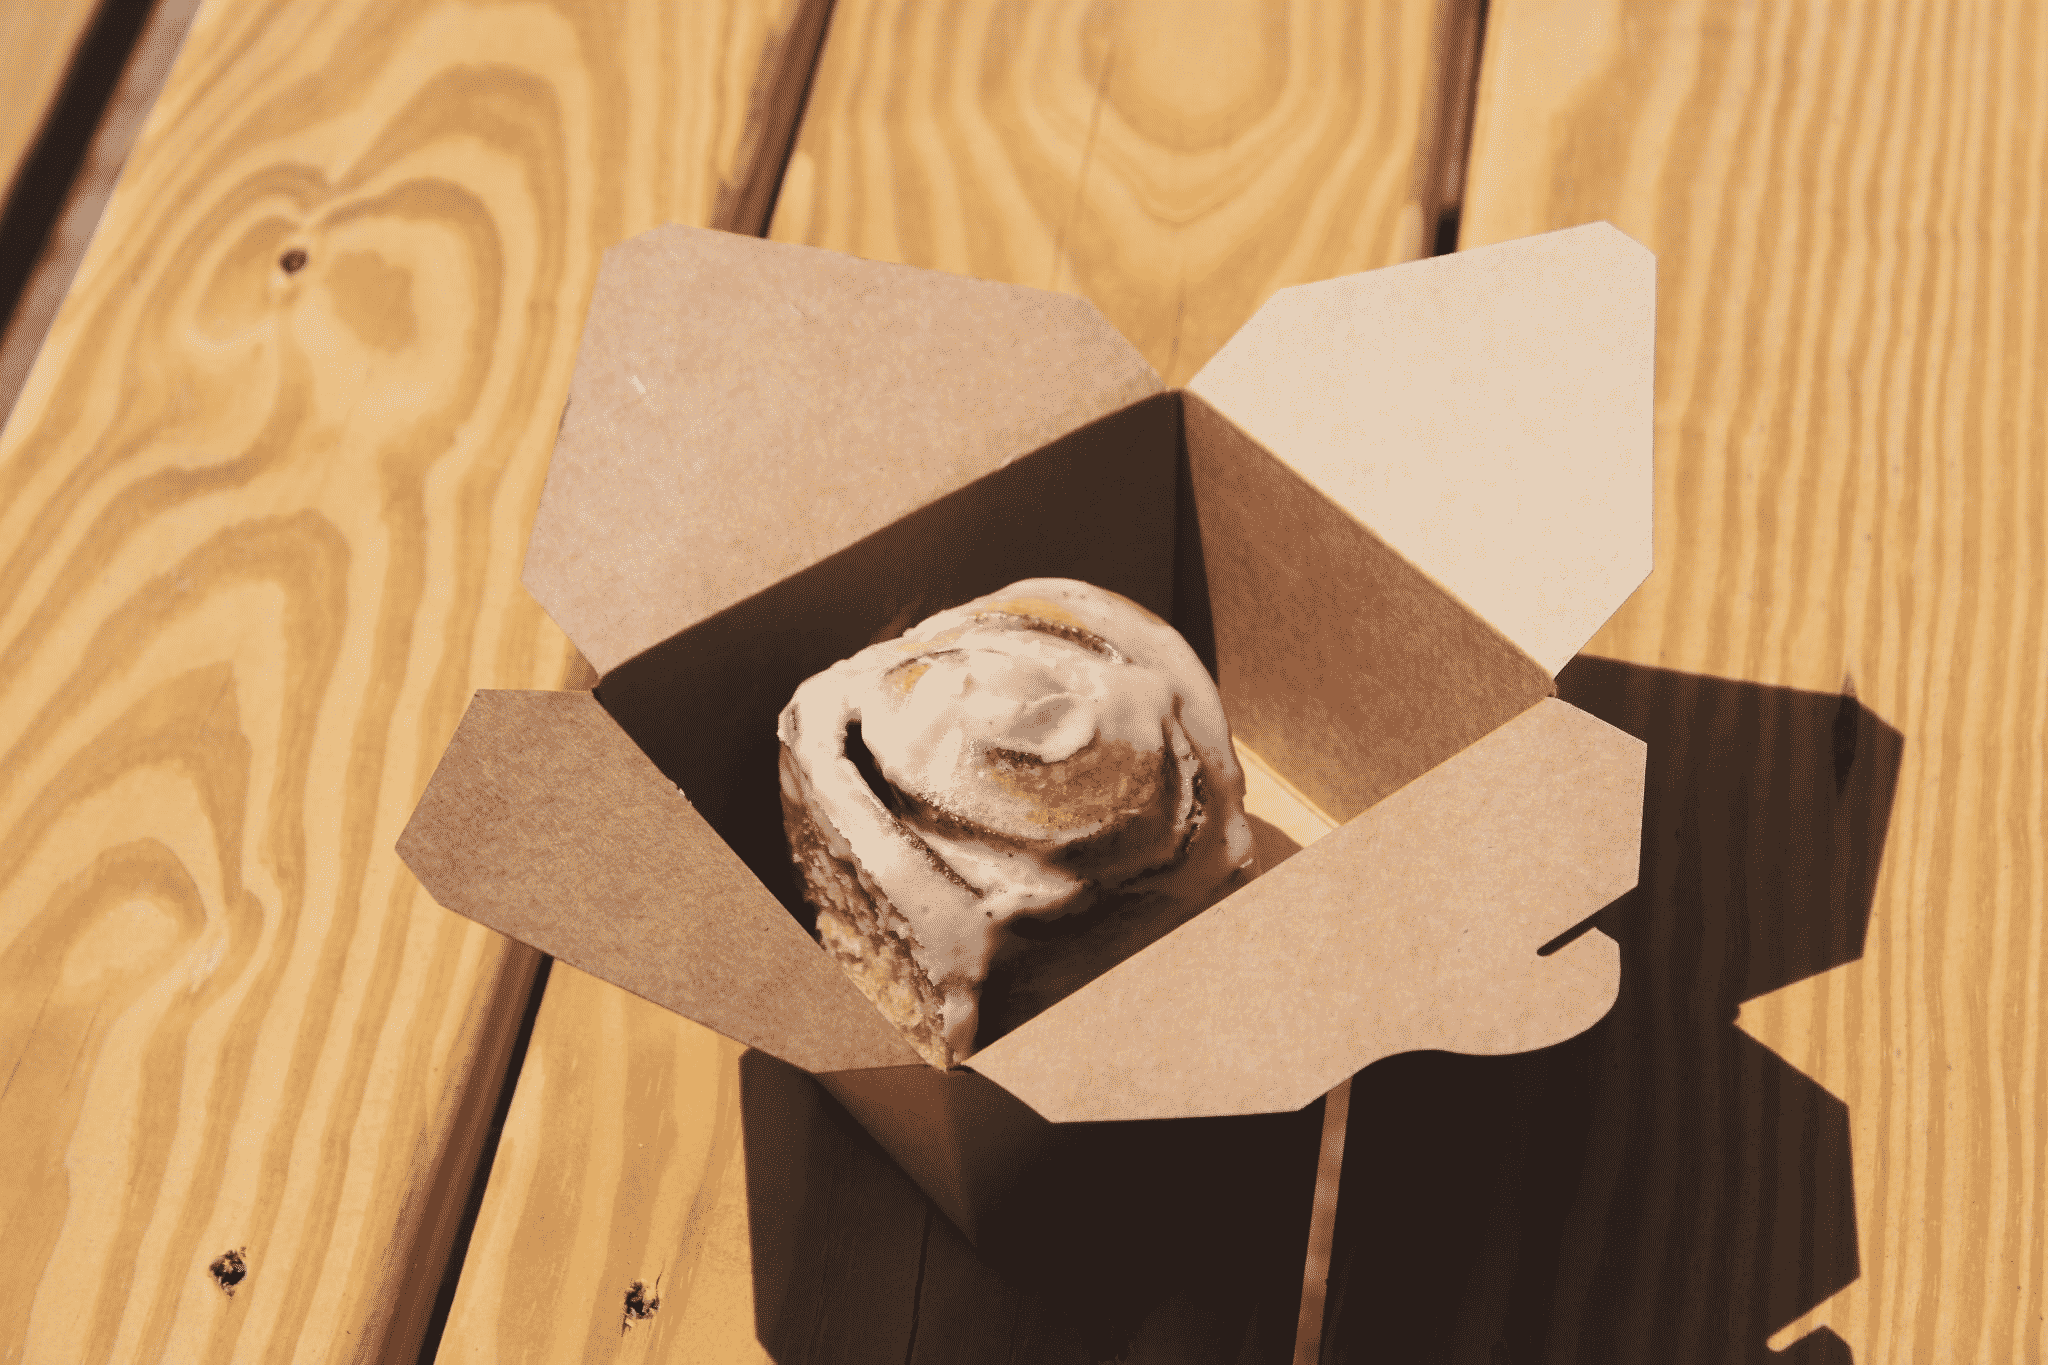 bread inside a box